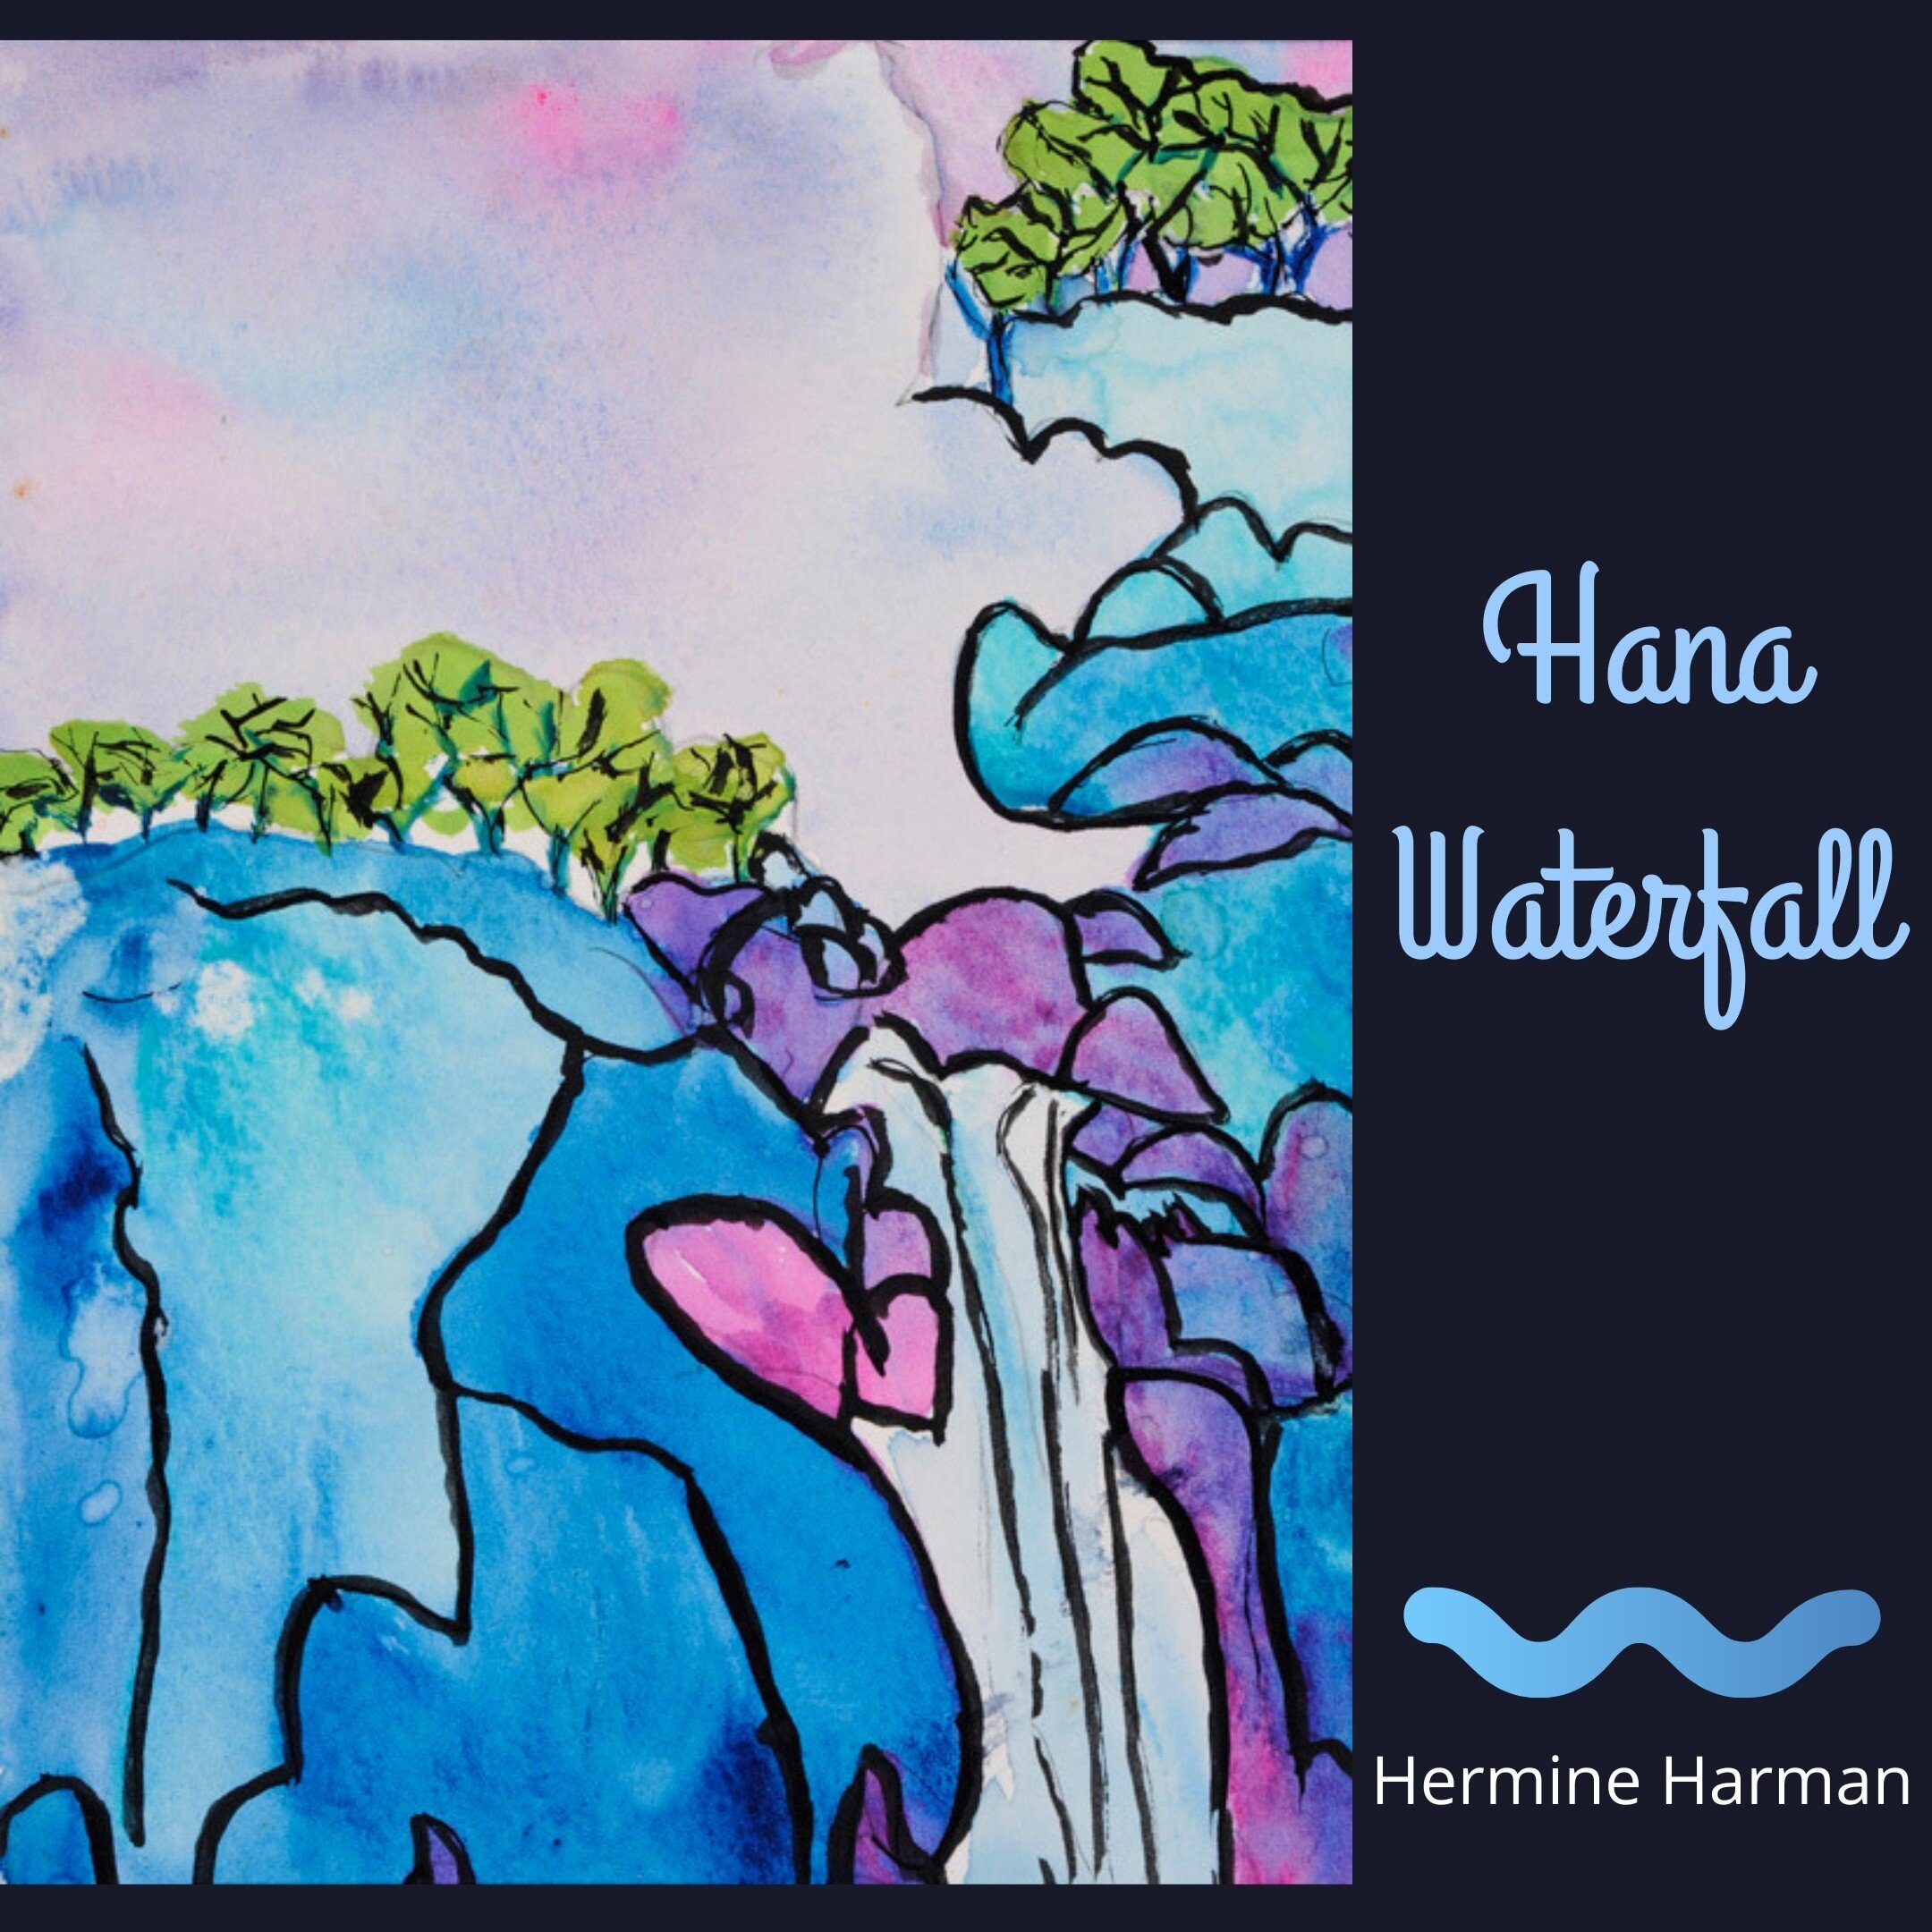 Hana-Waterfall-hermine-harman.jpg